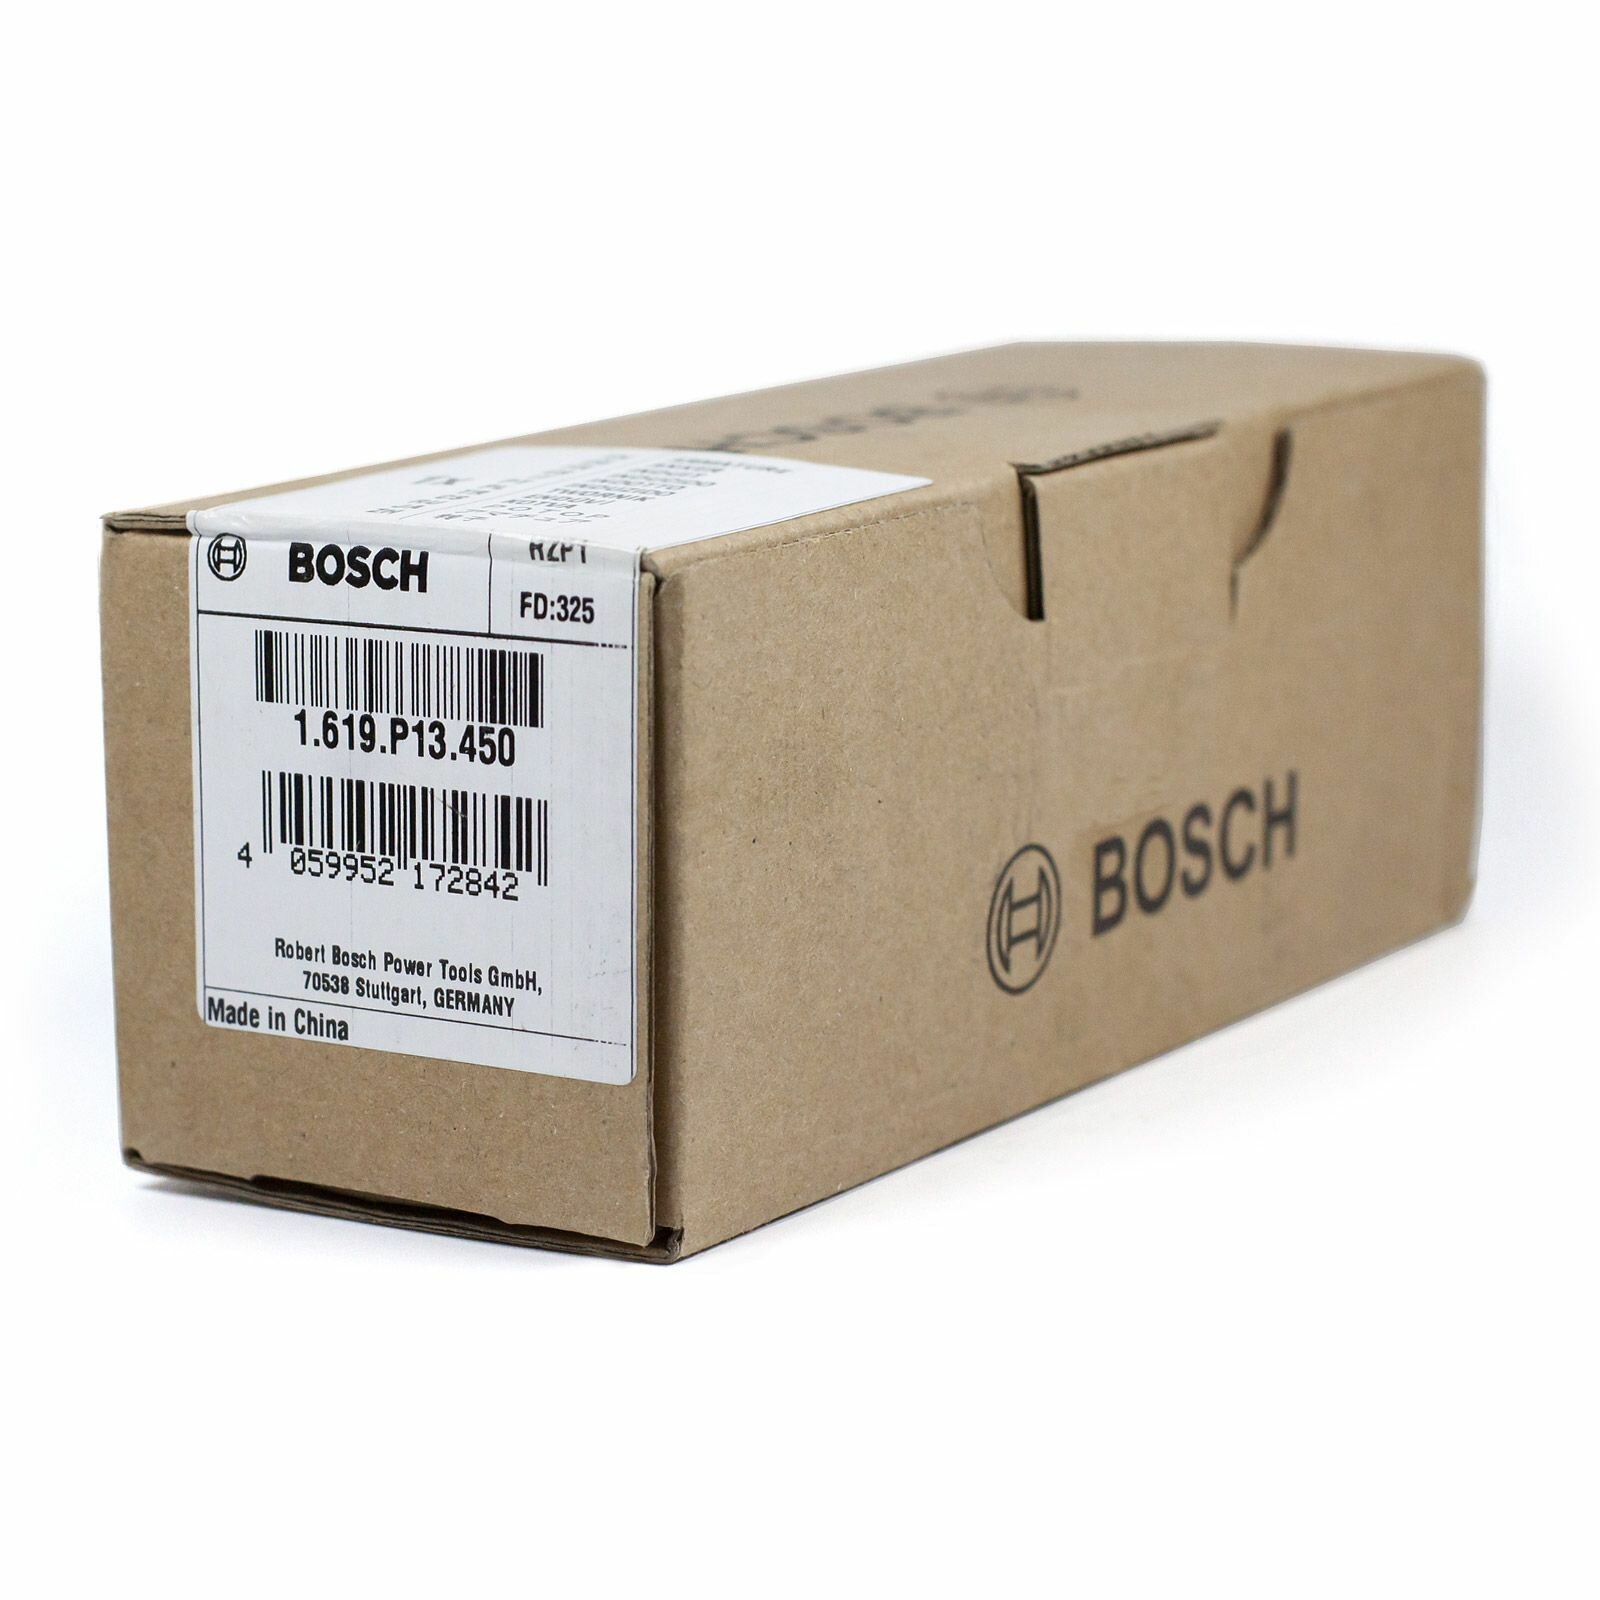 Якорь/Ротор для перфоратора Bosch GBH 240 артикул 1619P13450